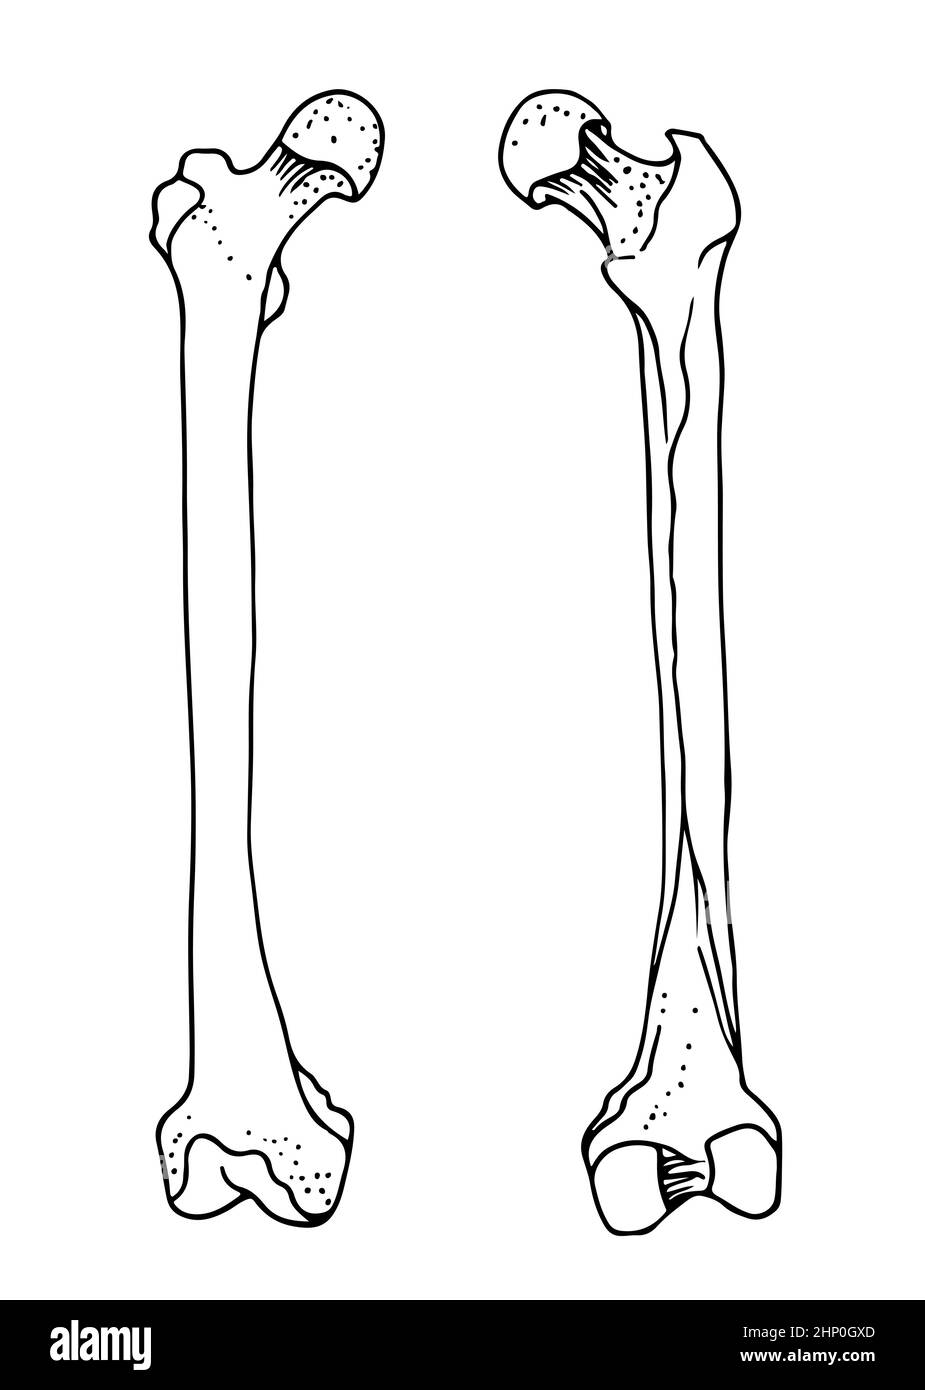 Menschliche Oberschenkelknochen, Vektor-handgezeichnete Illustration isoliert auf weißem Hintergrund, orthopädische Medizin Anatomie Skizze Stock Vektor